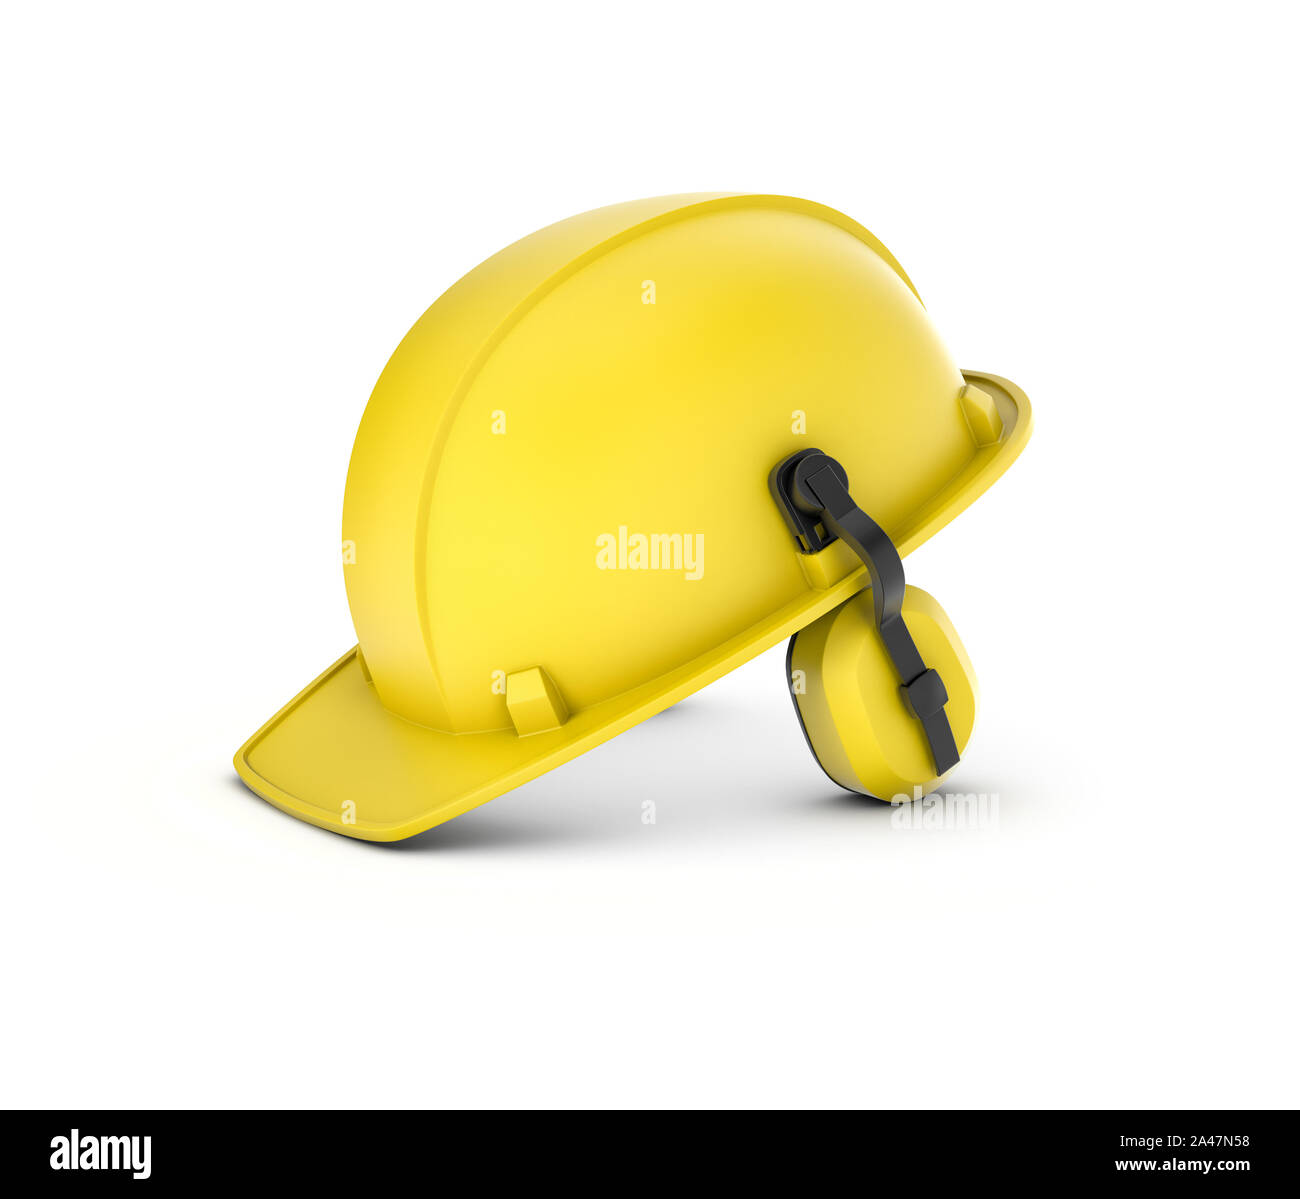 3D-Rendering von einem gelben Schutzhelm mit Kopfhörern auf einem weißen Hintergrund. Helm für Tragekomfort bei Industrie- oder Baustellen. Schutz h Stockfoto